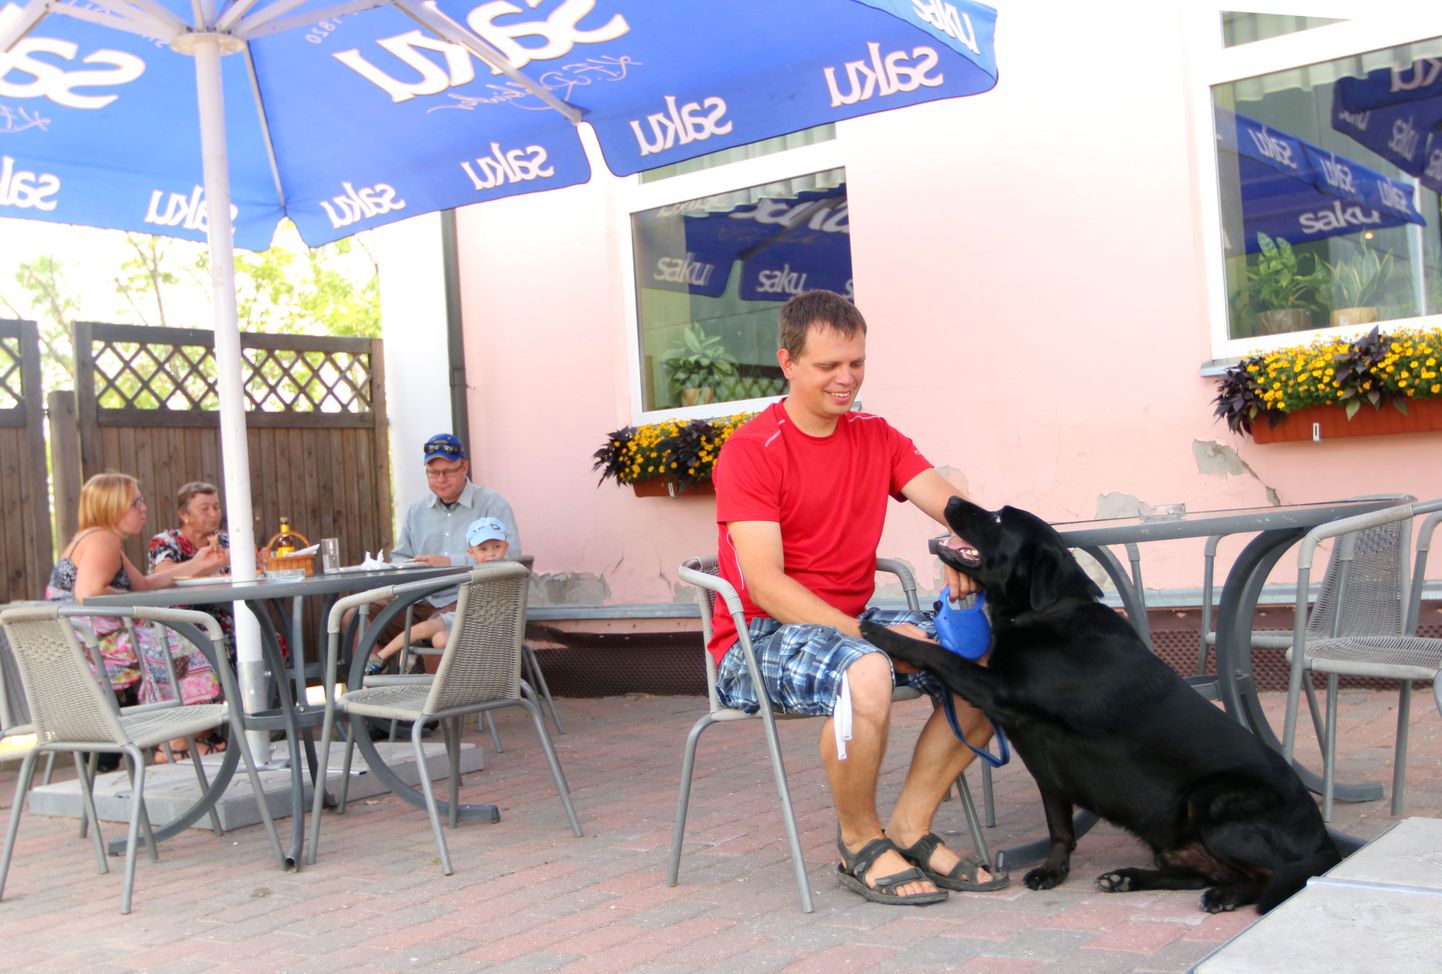 Valgas loomadele välikohvikus viibimiseks takistusi ei tehta, kinnitab õpetajaametit pidav Toomas Duvin, kes sageli koeraga ringi liigub. Vajadusel antakse loomadele juuagi.